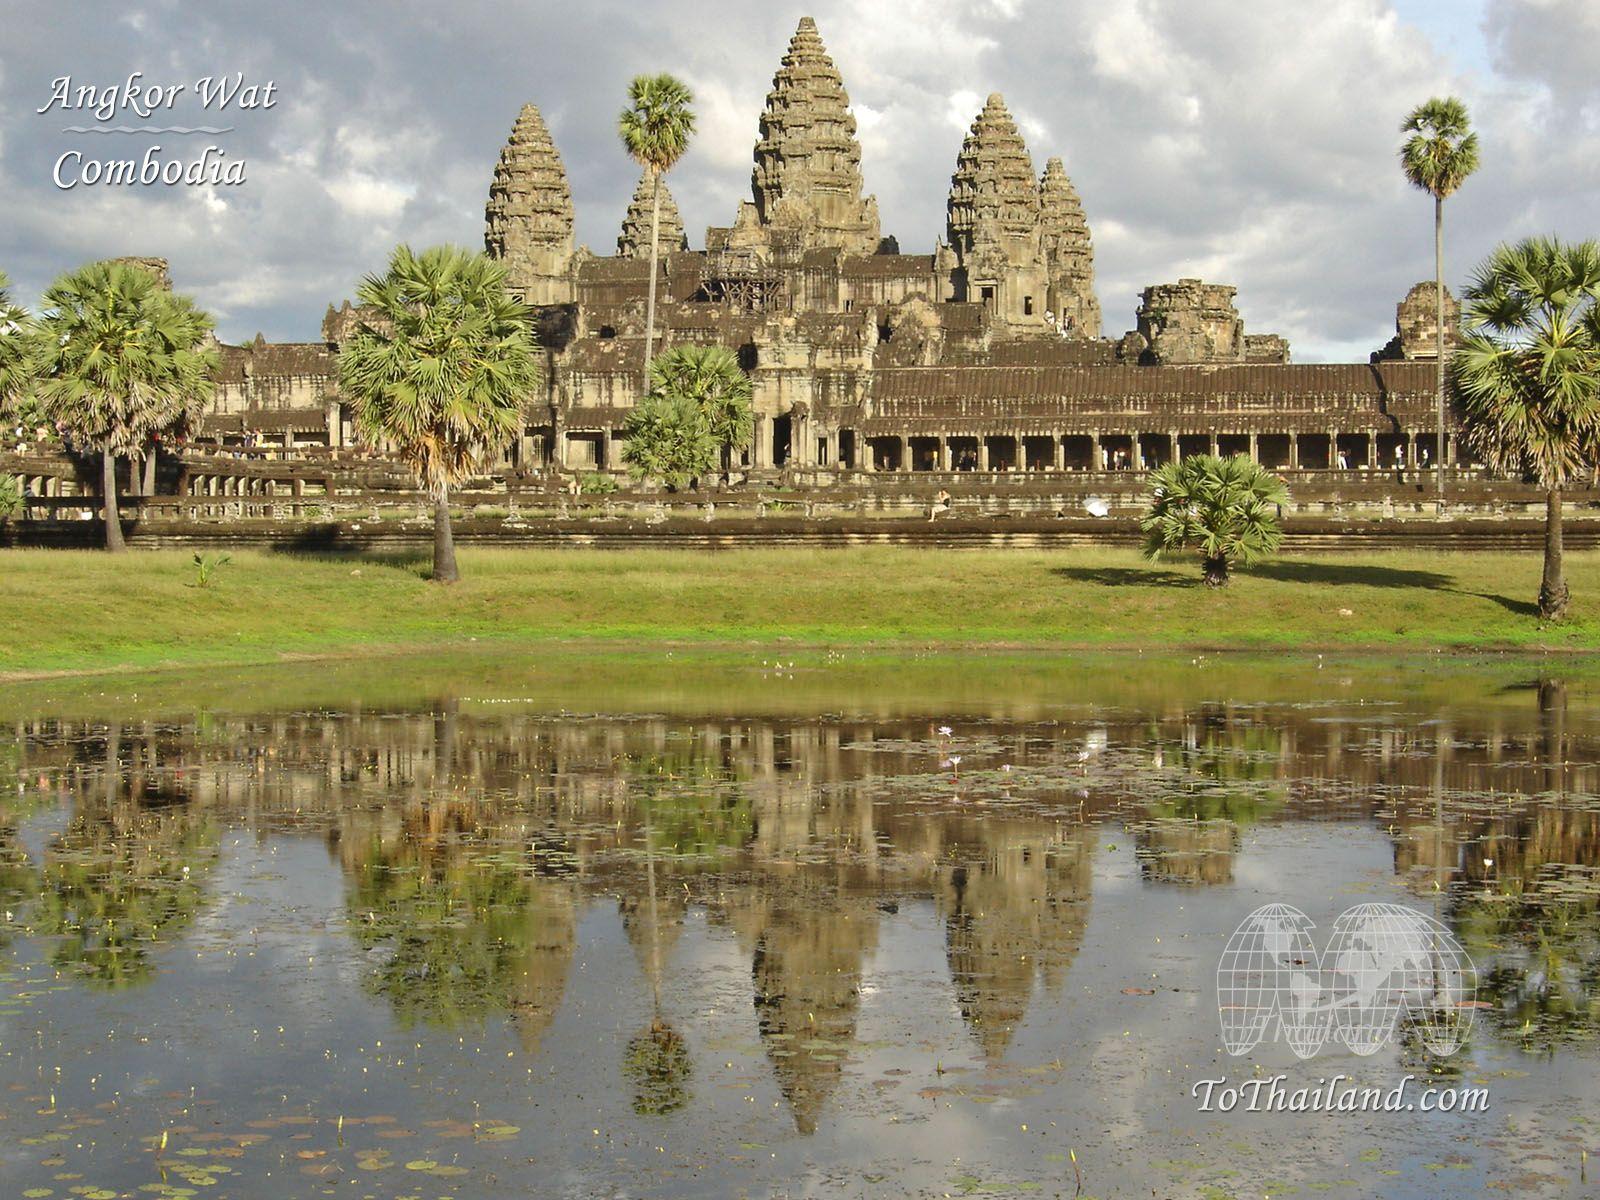 Angkor Wat & Angkor Thom